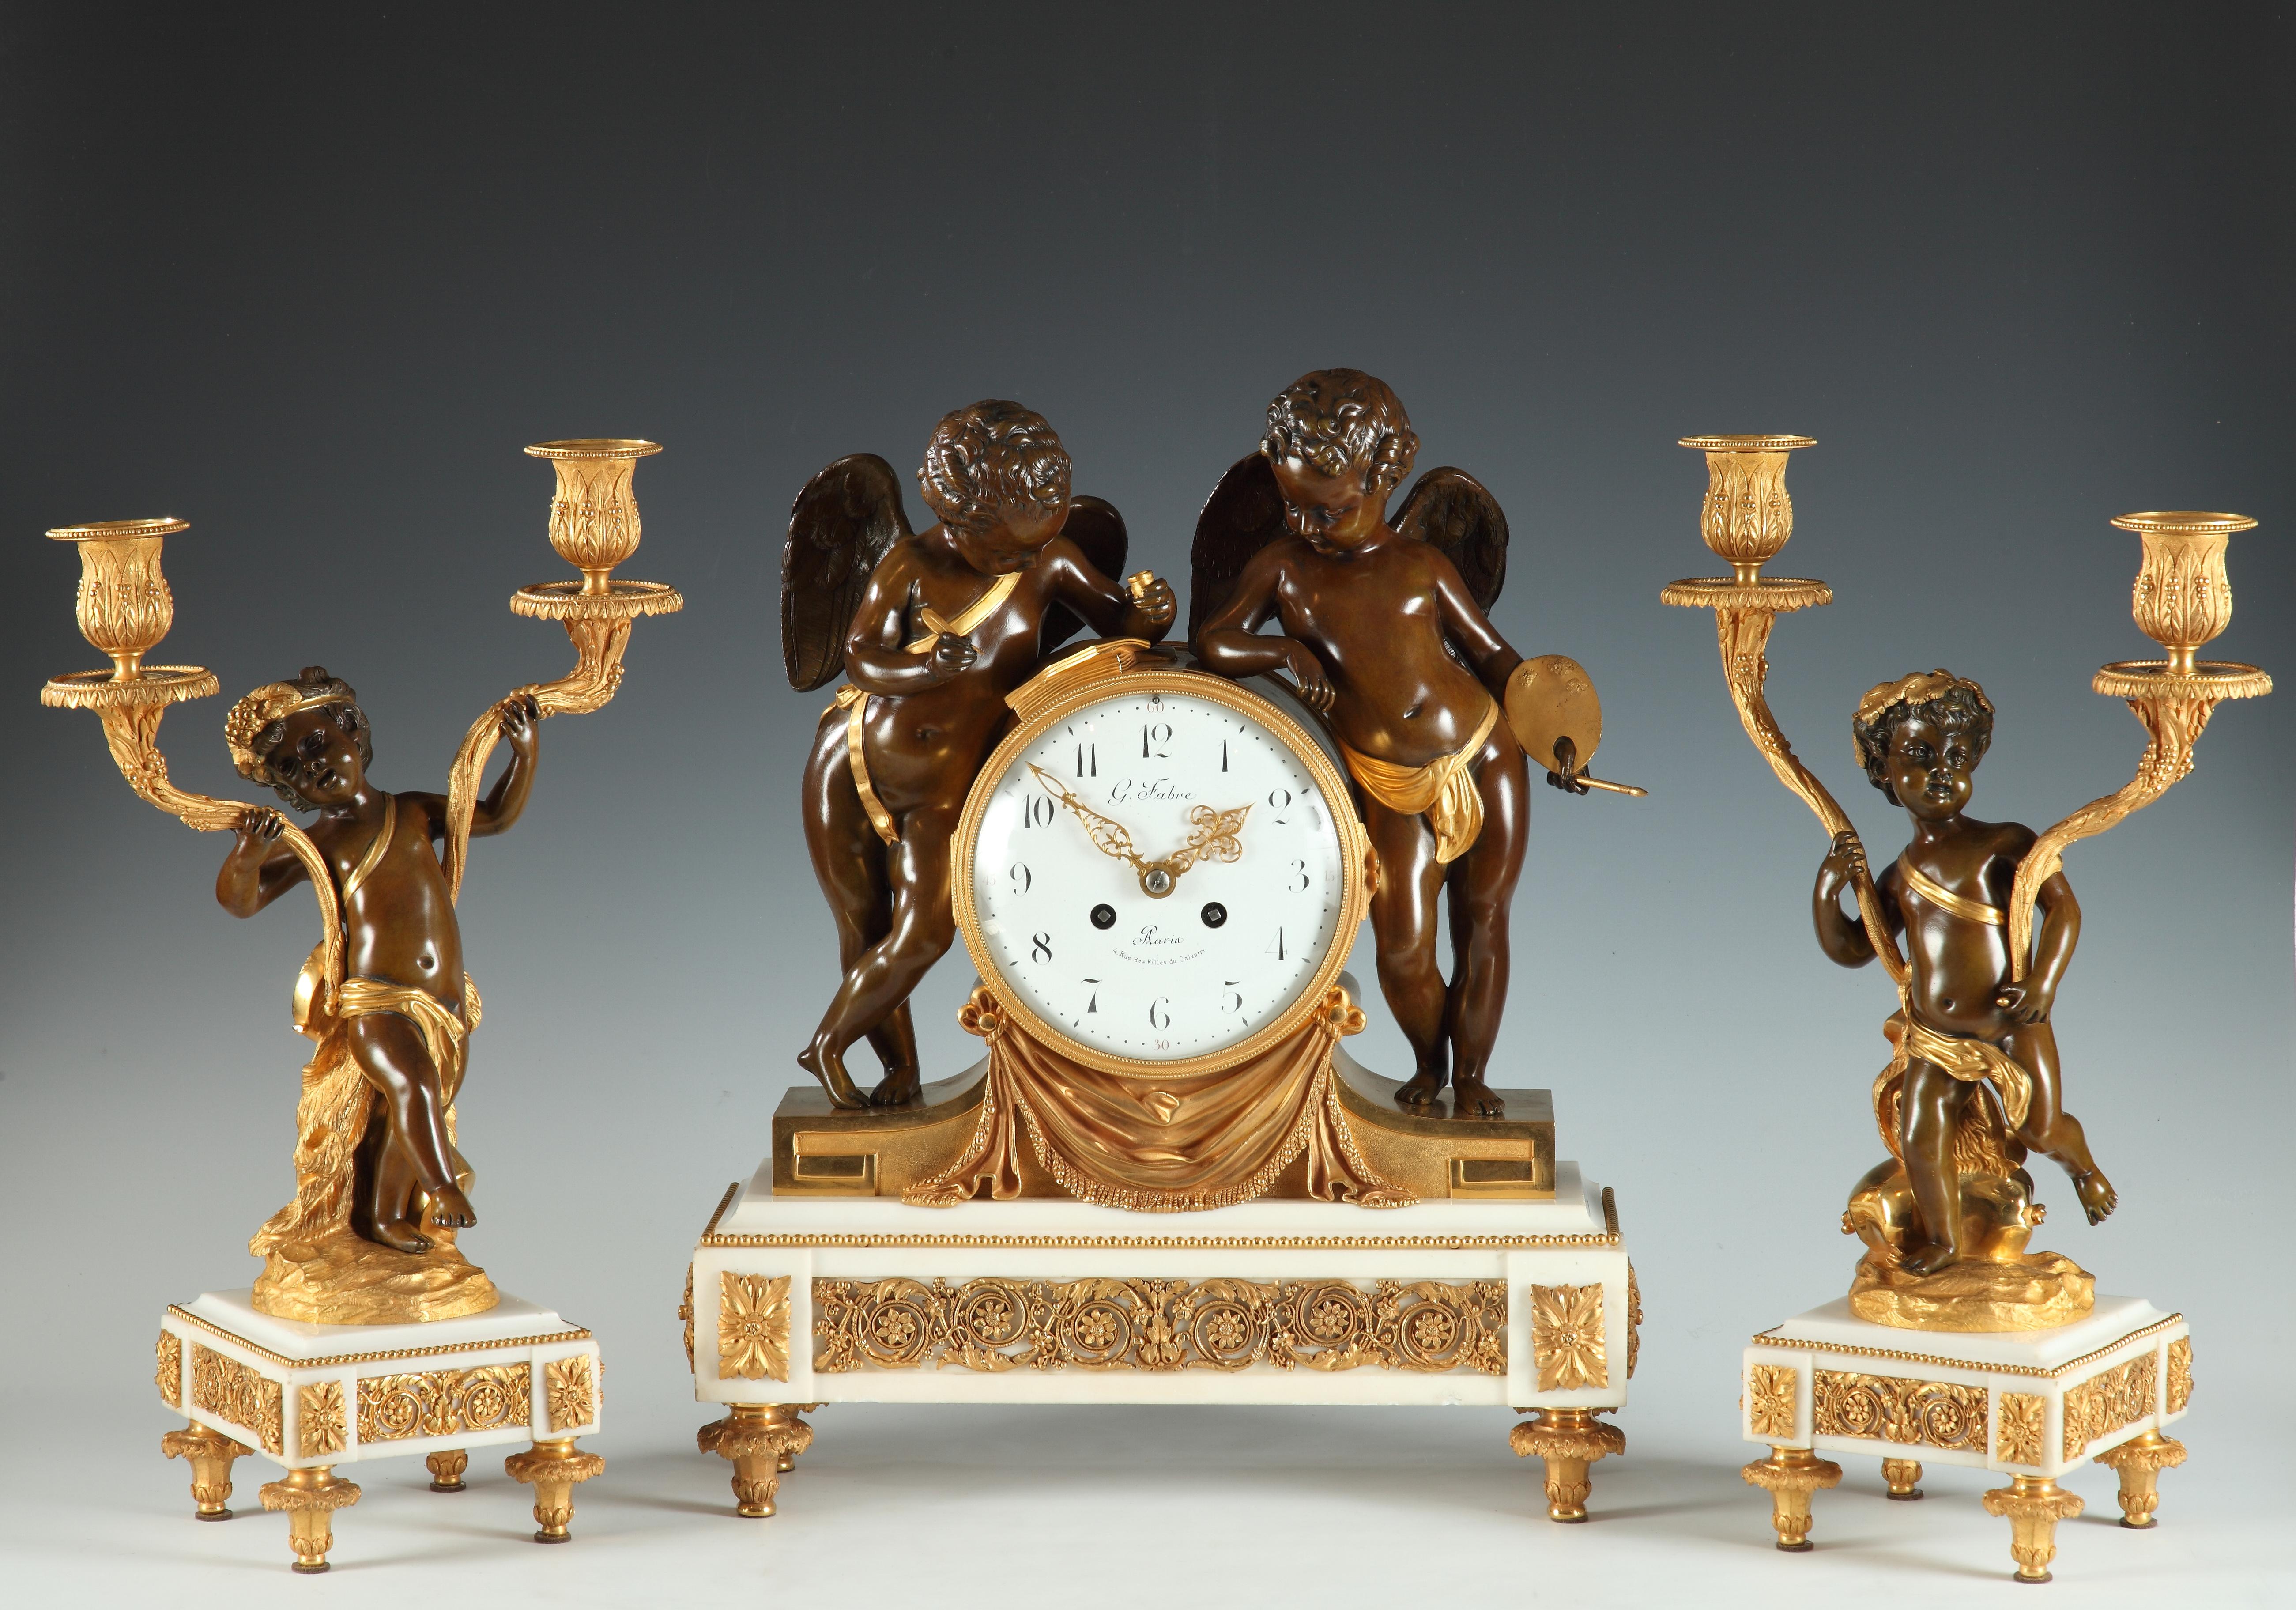 Cadran signé G. Fabre, 4 rue des Filles du Calvaire, Paris
Horloge signée Samuel Marti - Médaille d'Or 1900

Pendule de style Louis XVI en bronze doré et marbre statuaire de Carrare, composée d'une pendule et d'une paire de candélabres. L'horloge